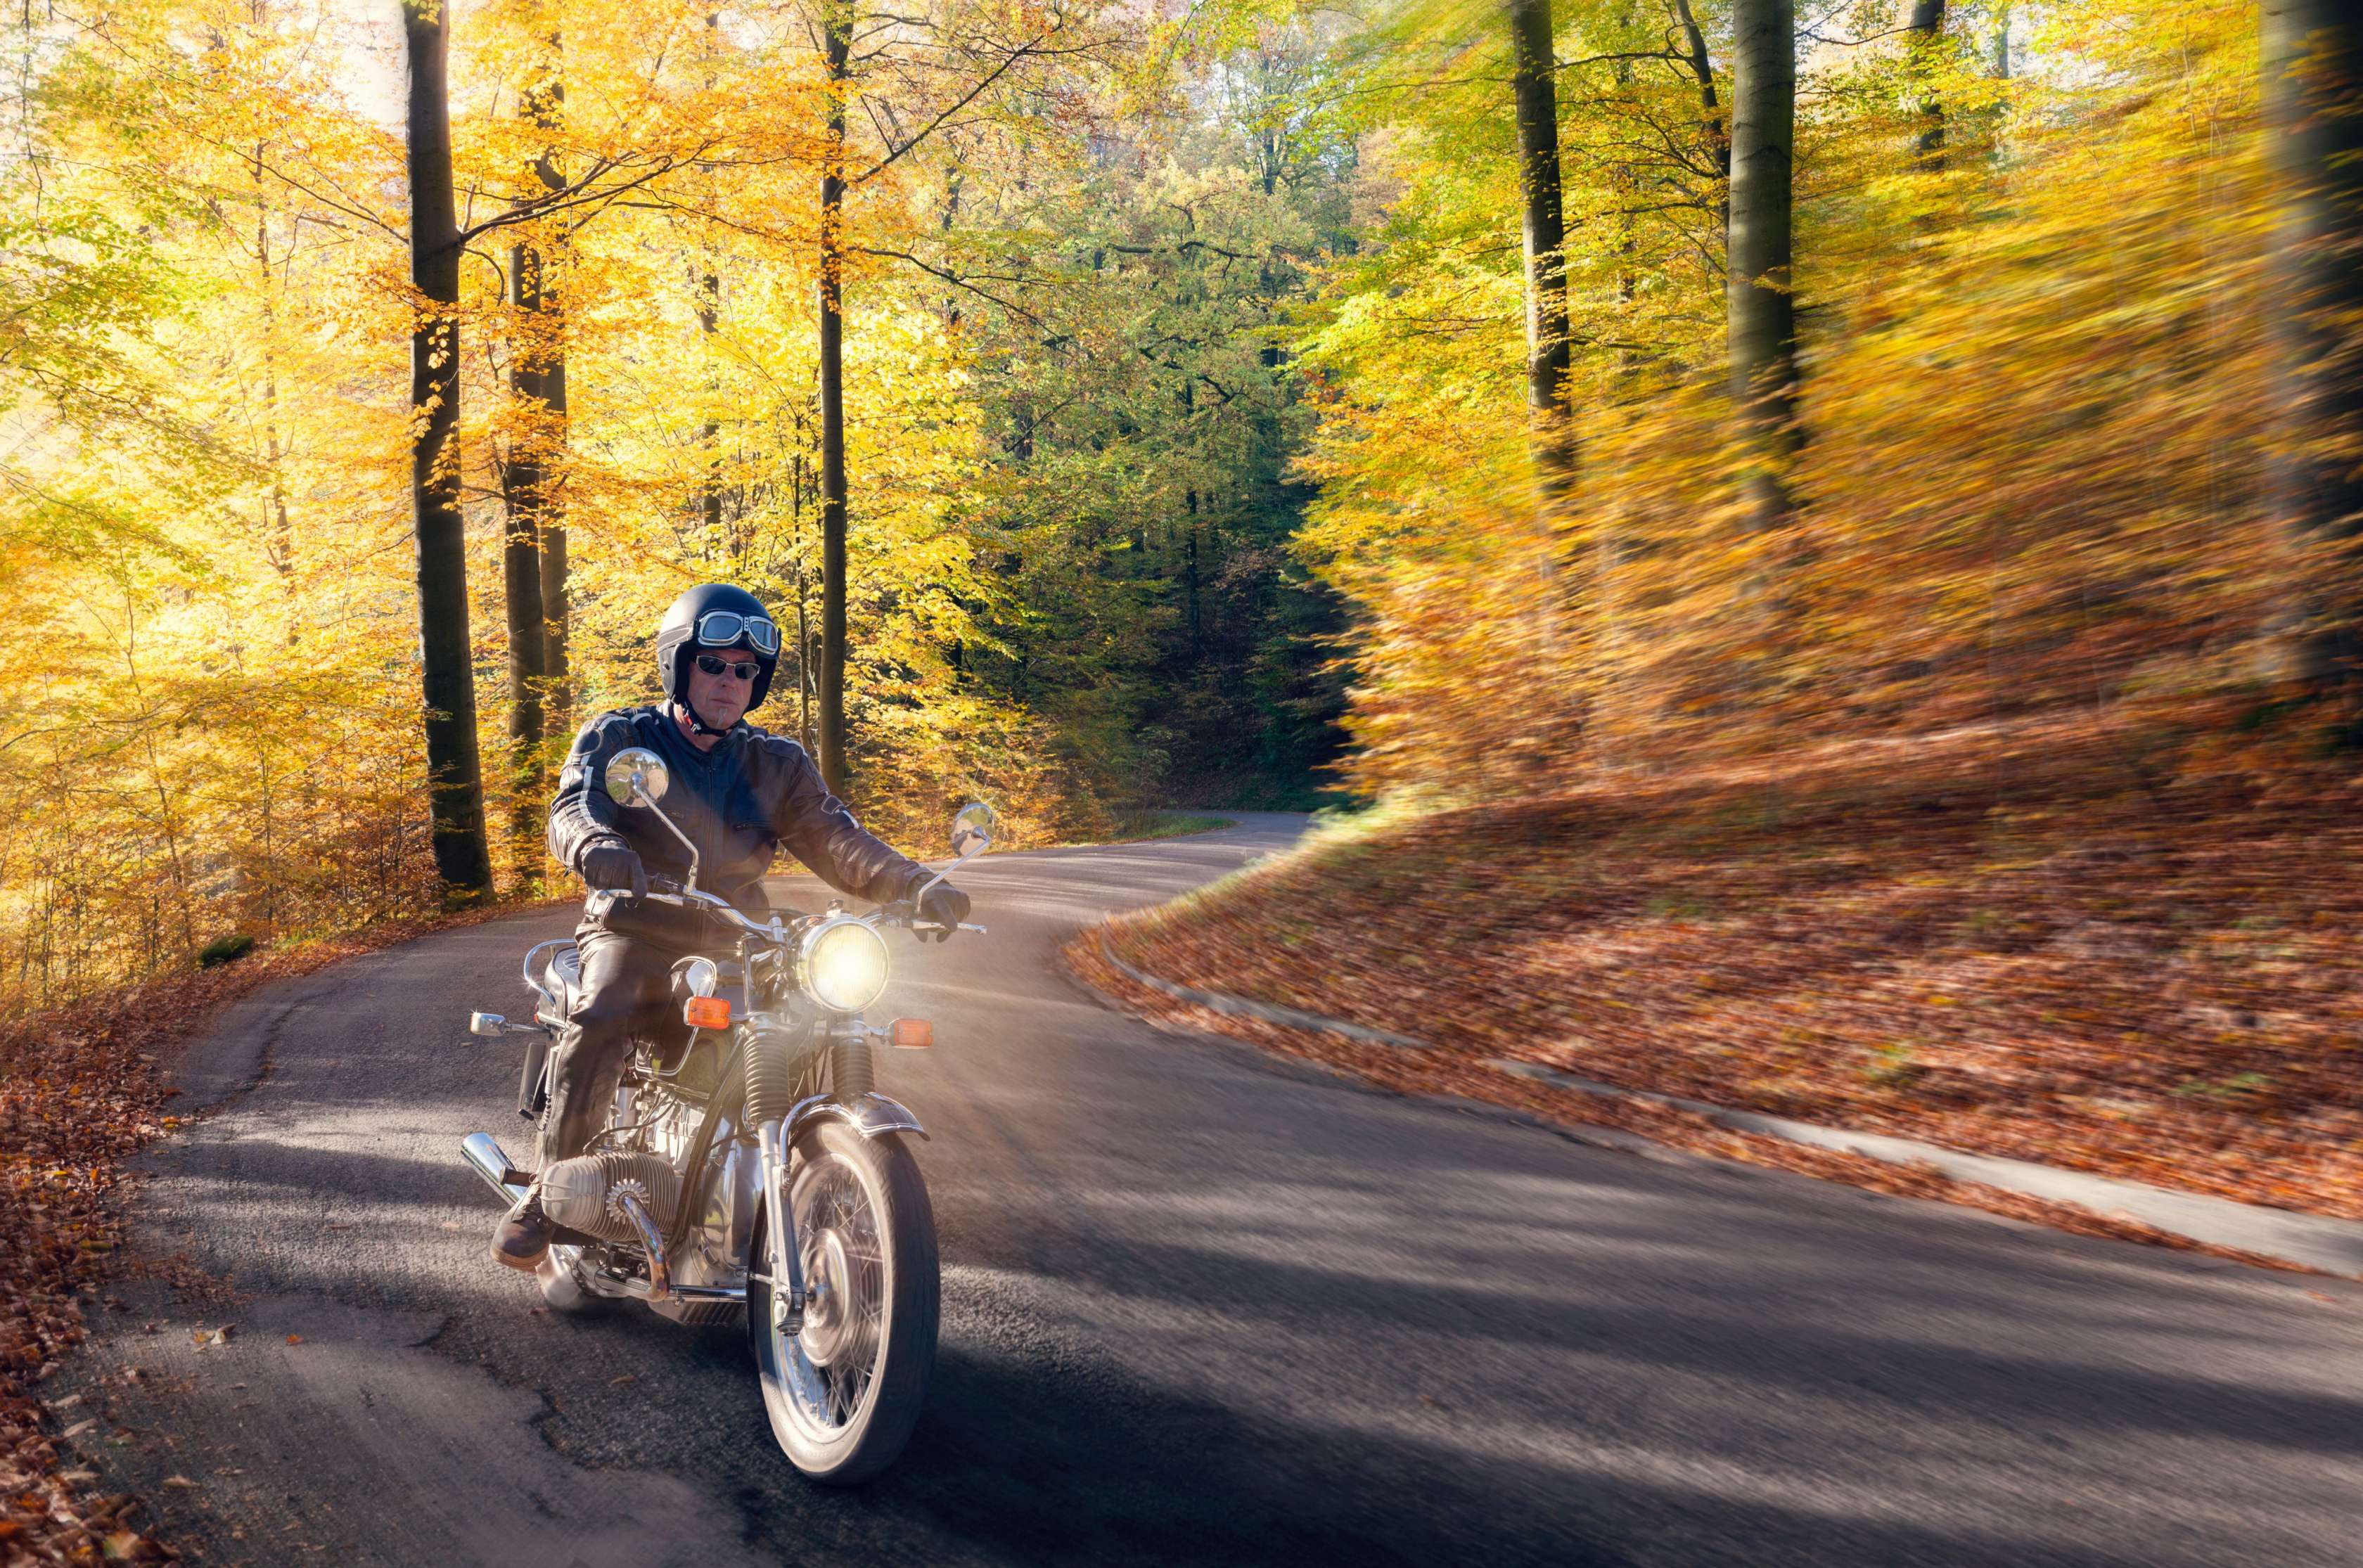 Mann fährt mit Oldtimer-Motorrad auf einer Strasse durch einen Wald